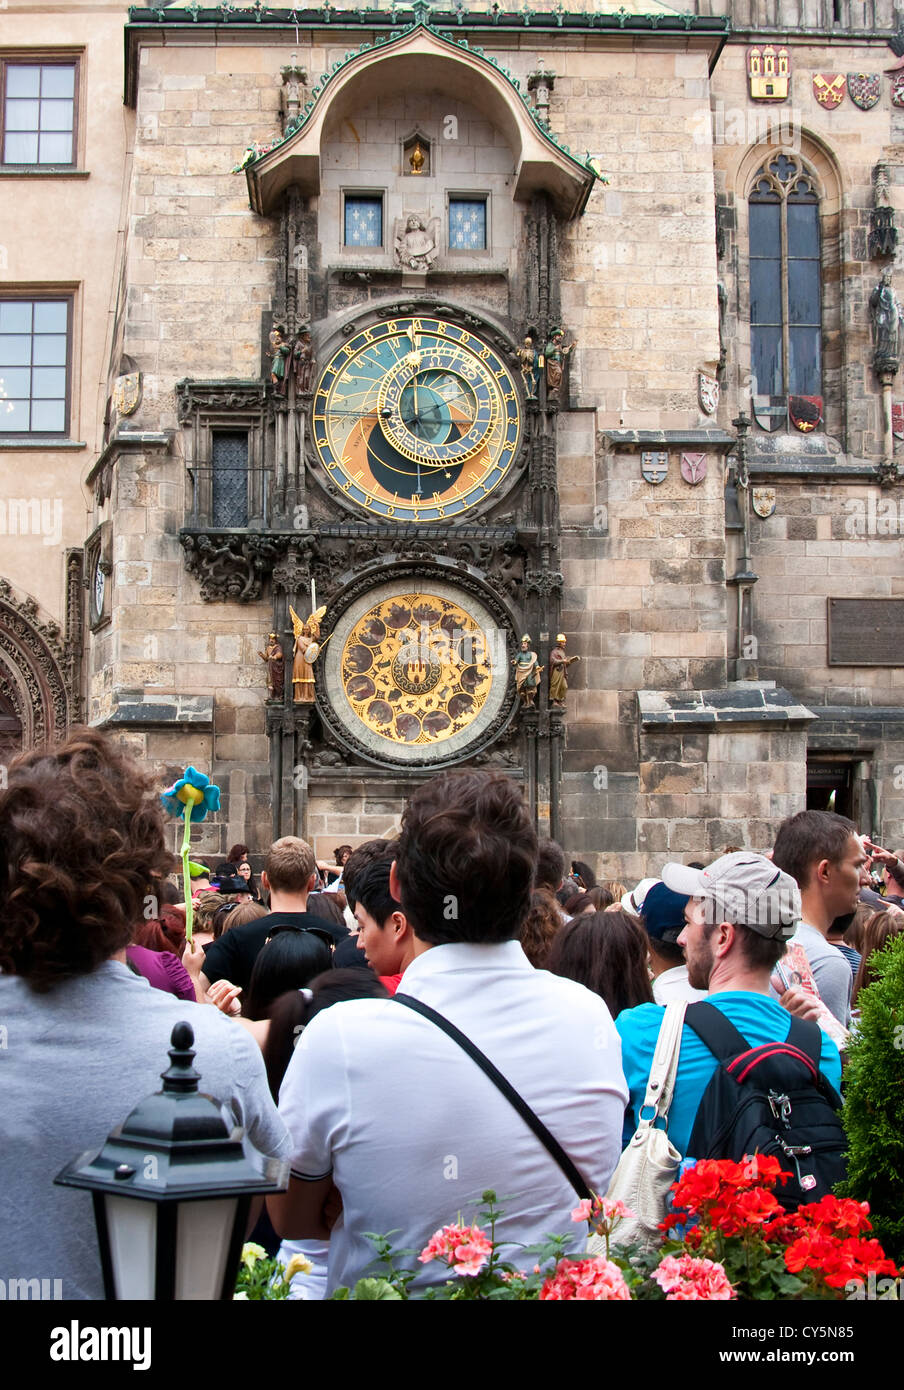 Horloge astronomique médiévale sur la vieille ville de Prague avec tour de l'hôtel de touristes en attente de voir les horaires Banque D'Images